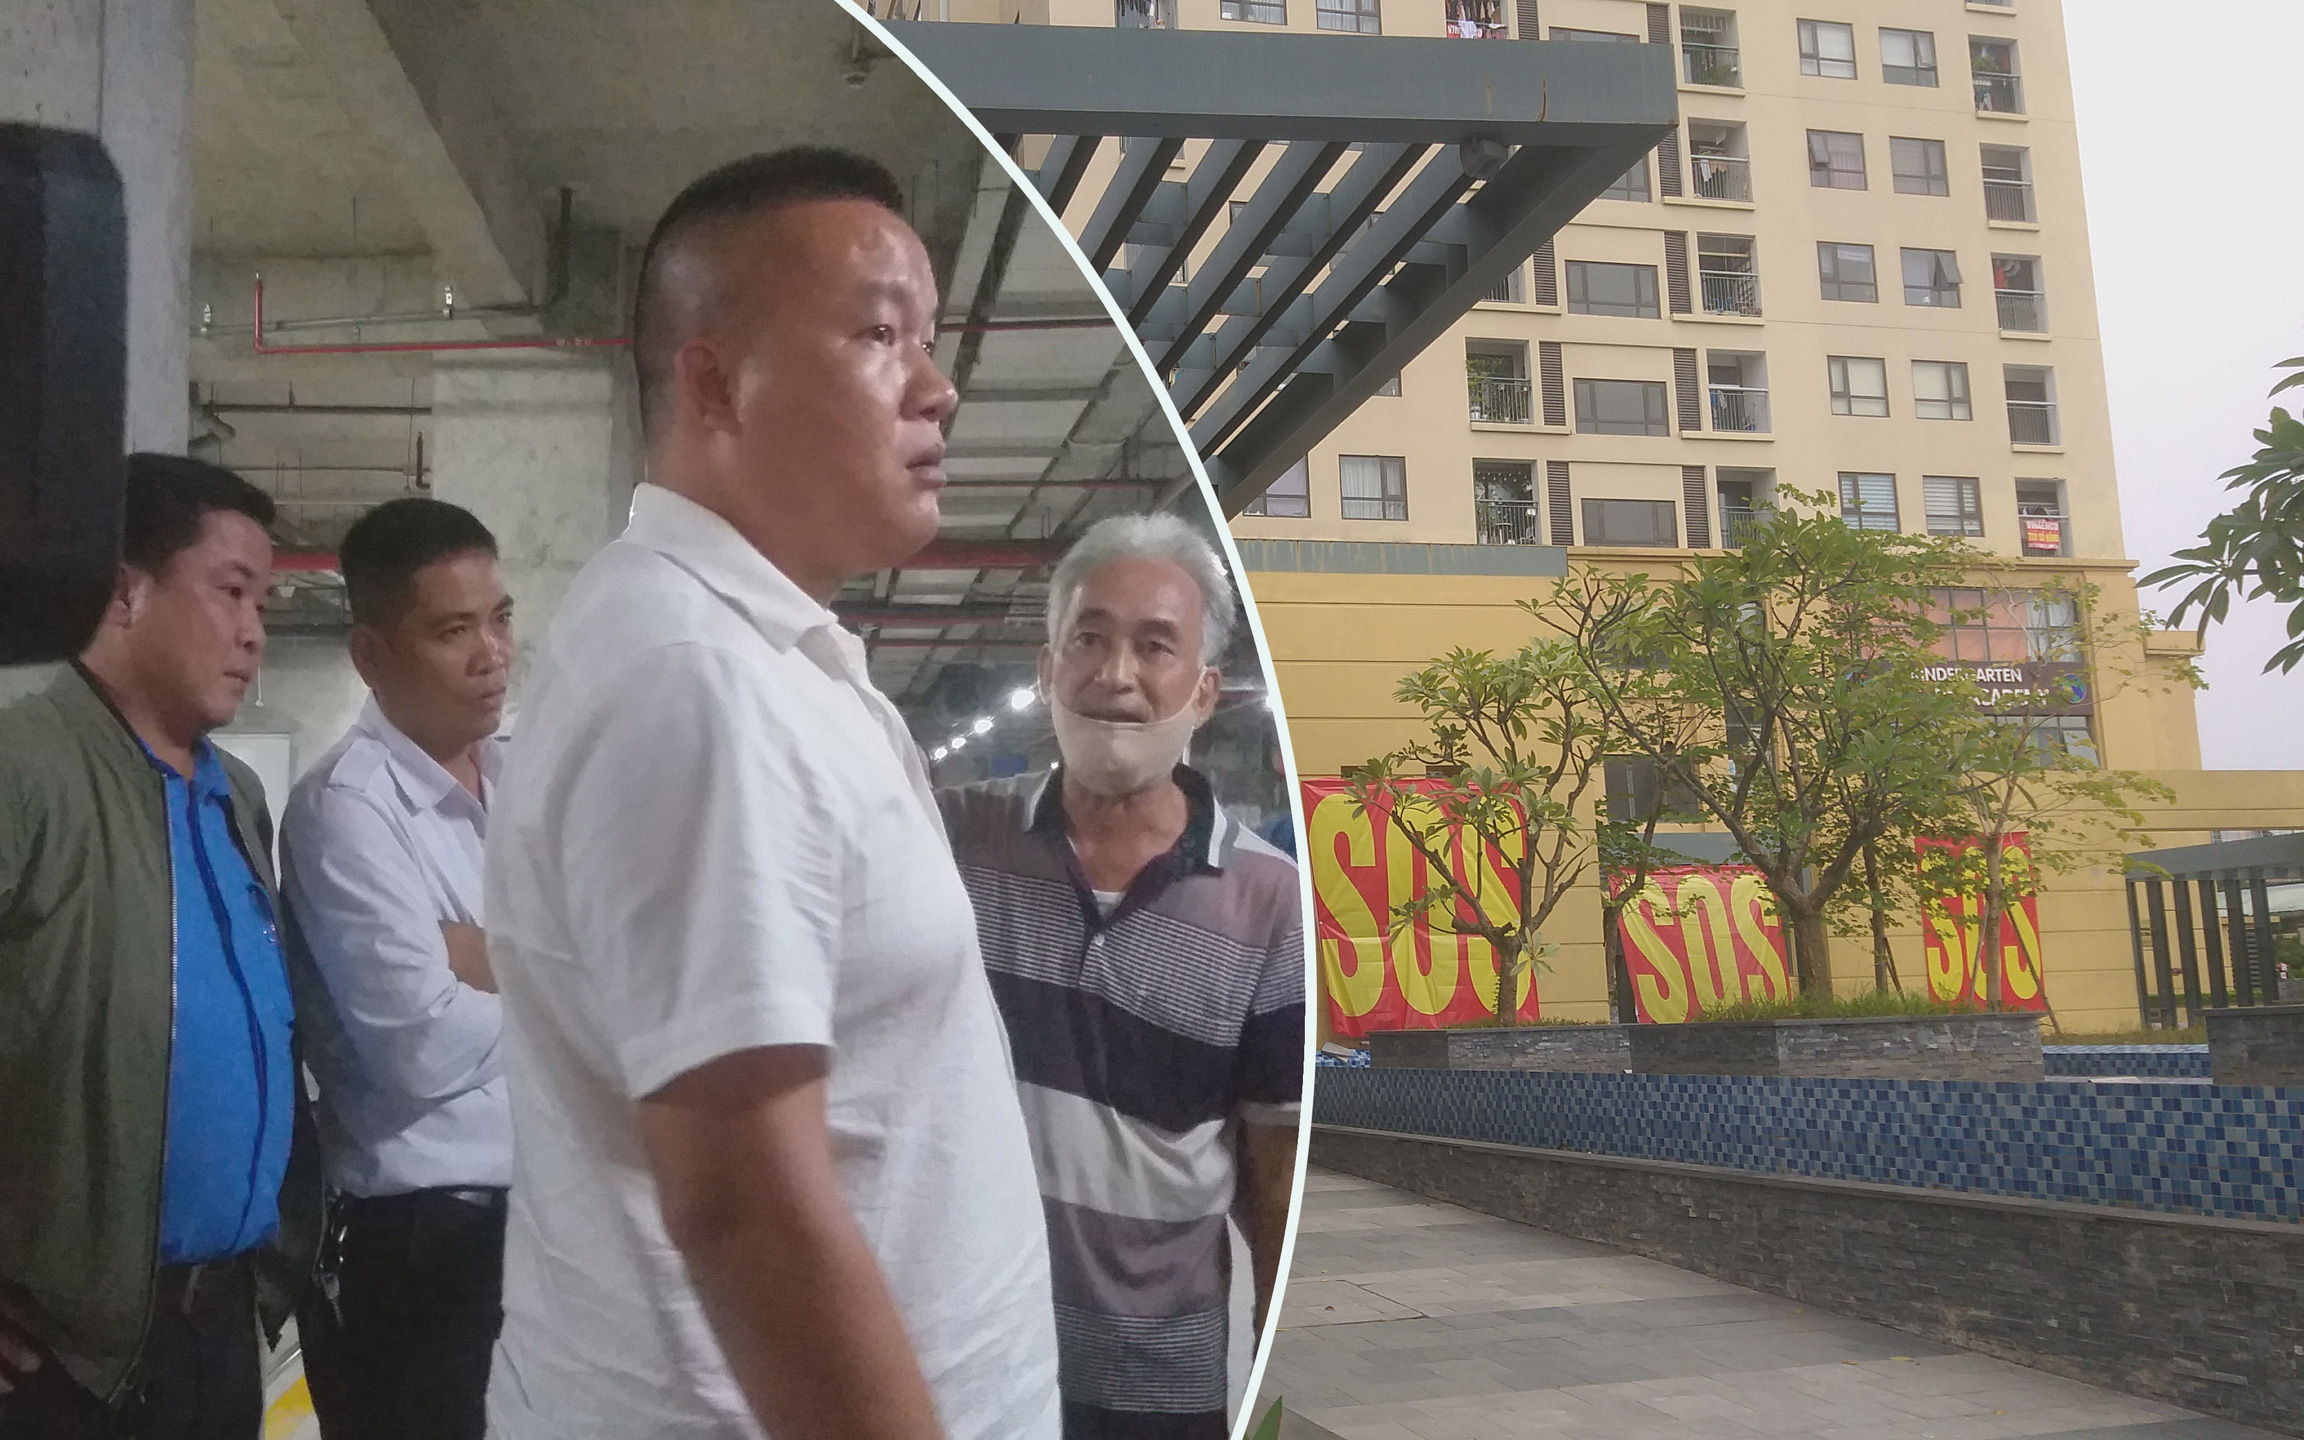 Hà Nội: Đại diện cư dân dẫn phóng viên đi phản ánh bất cập ở chung cư cao cấp, nhưng bị bảo vệ cấm quay phim chụp hình